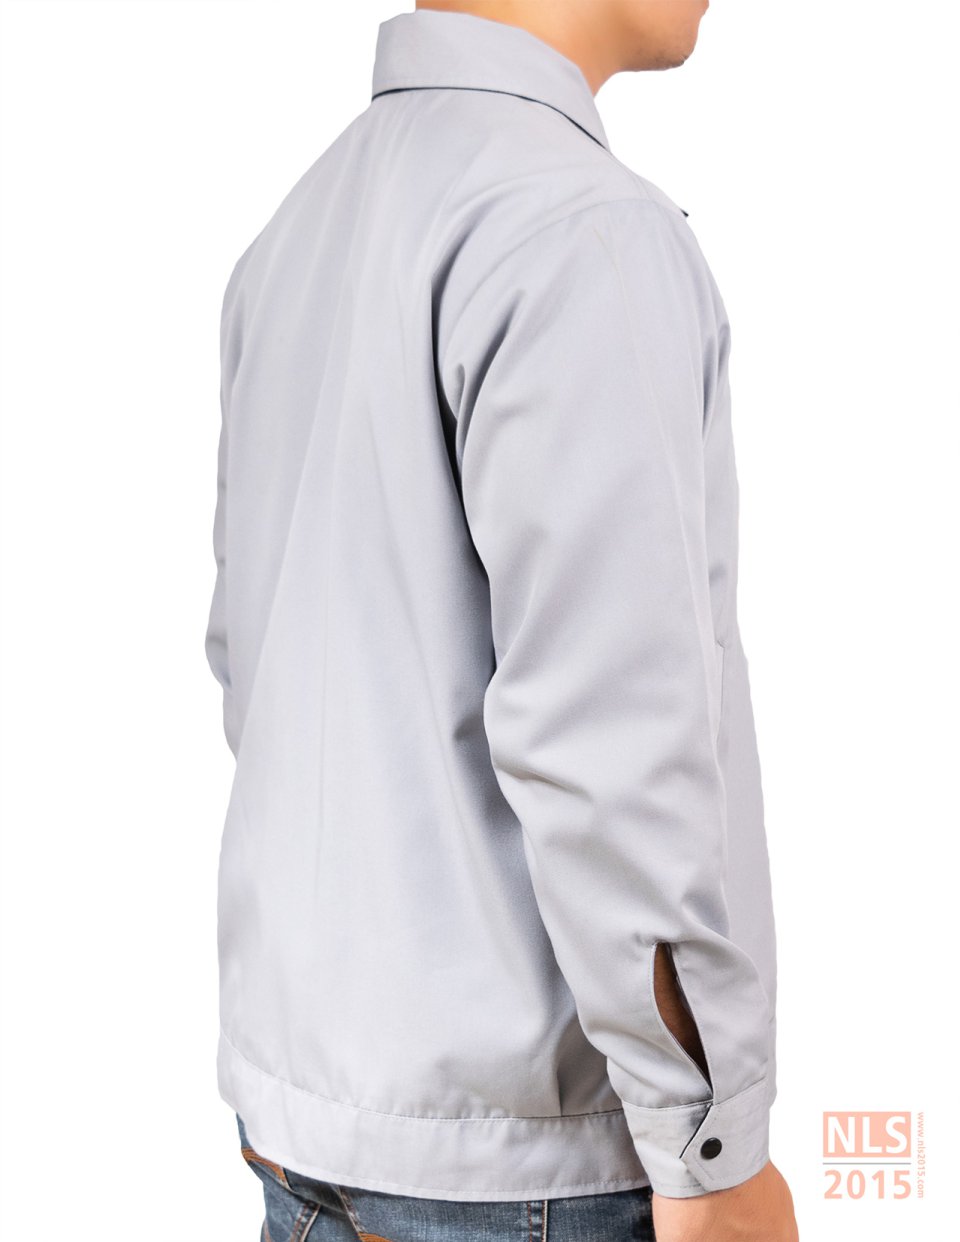 ตัวอย่างเสื้อแจ็คเก็ตพนักงานบริษัท STT / นลินสิริ รับผลิตรับออกแบบเสื้อแจ็คเก็ตพร้อมปักโลโก้รูปที่ 